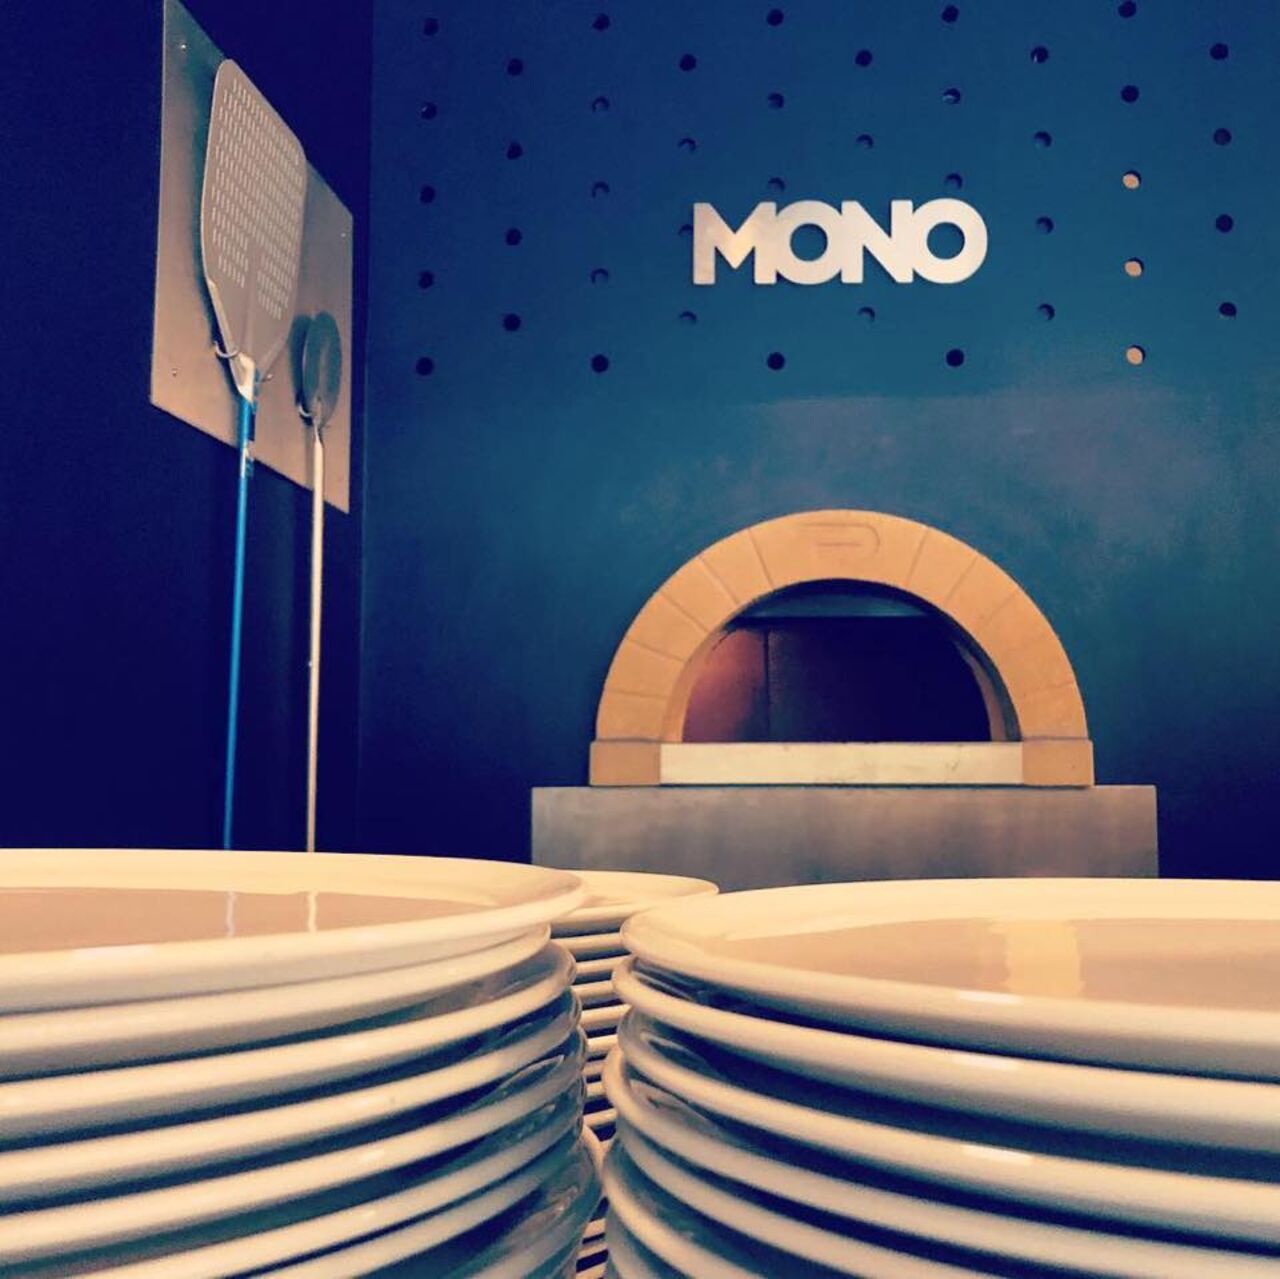 A photo of Mono